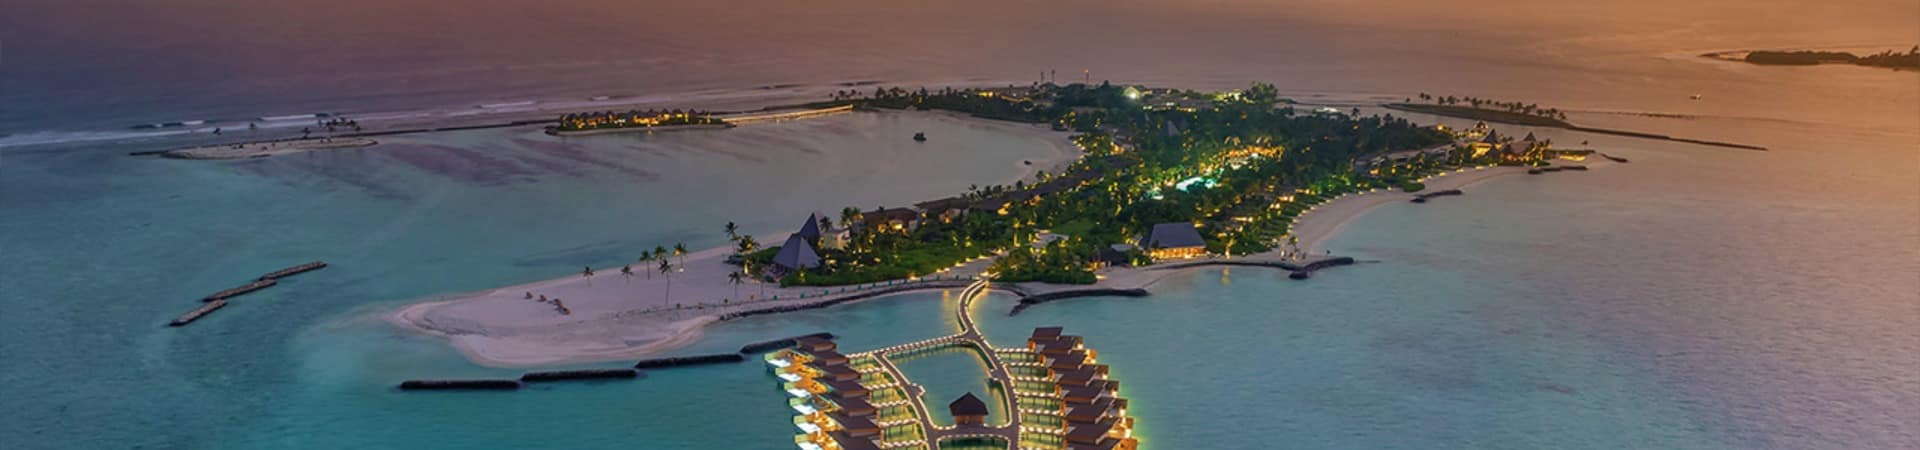 Maldivas kuda villingili resort aerea noite